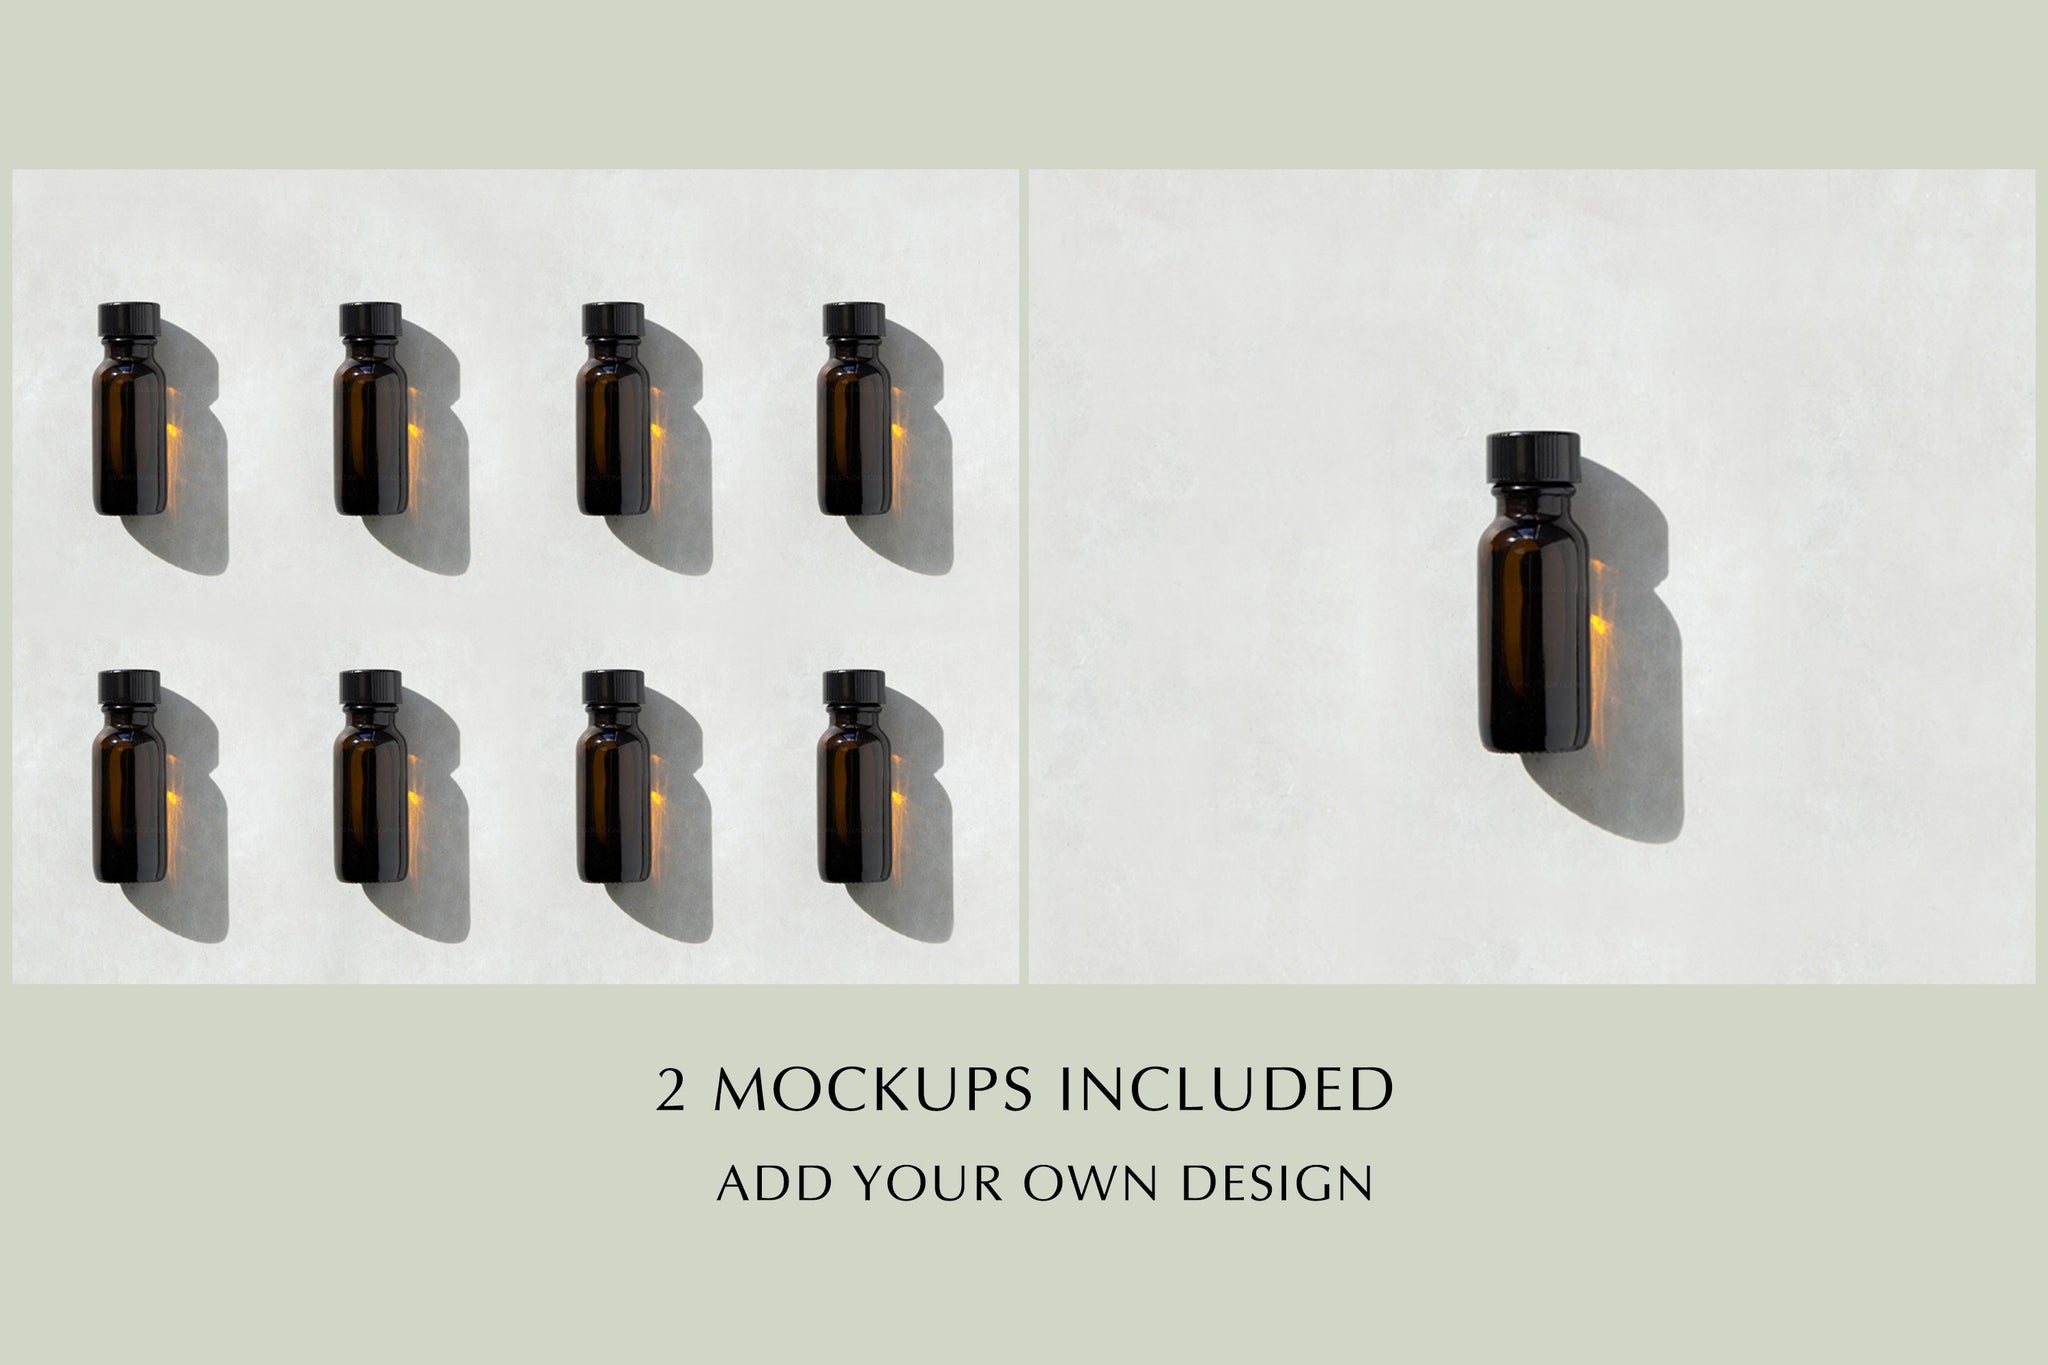 Essential Oil Bottle Mockup - Copal Studio Packaging Mockups For Designers